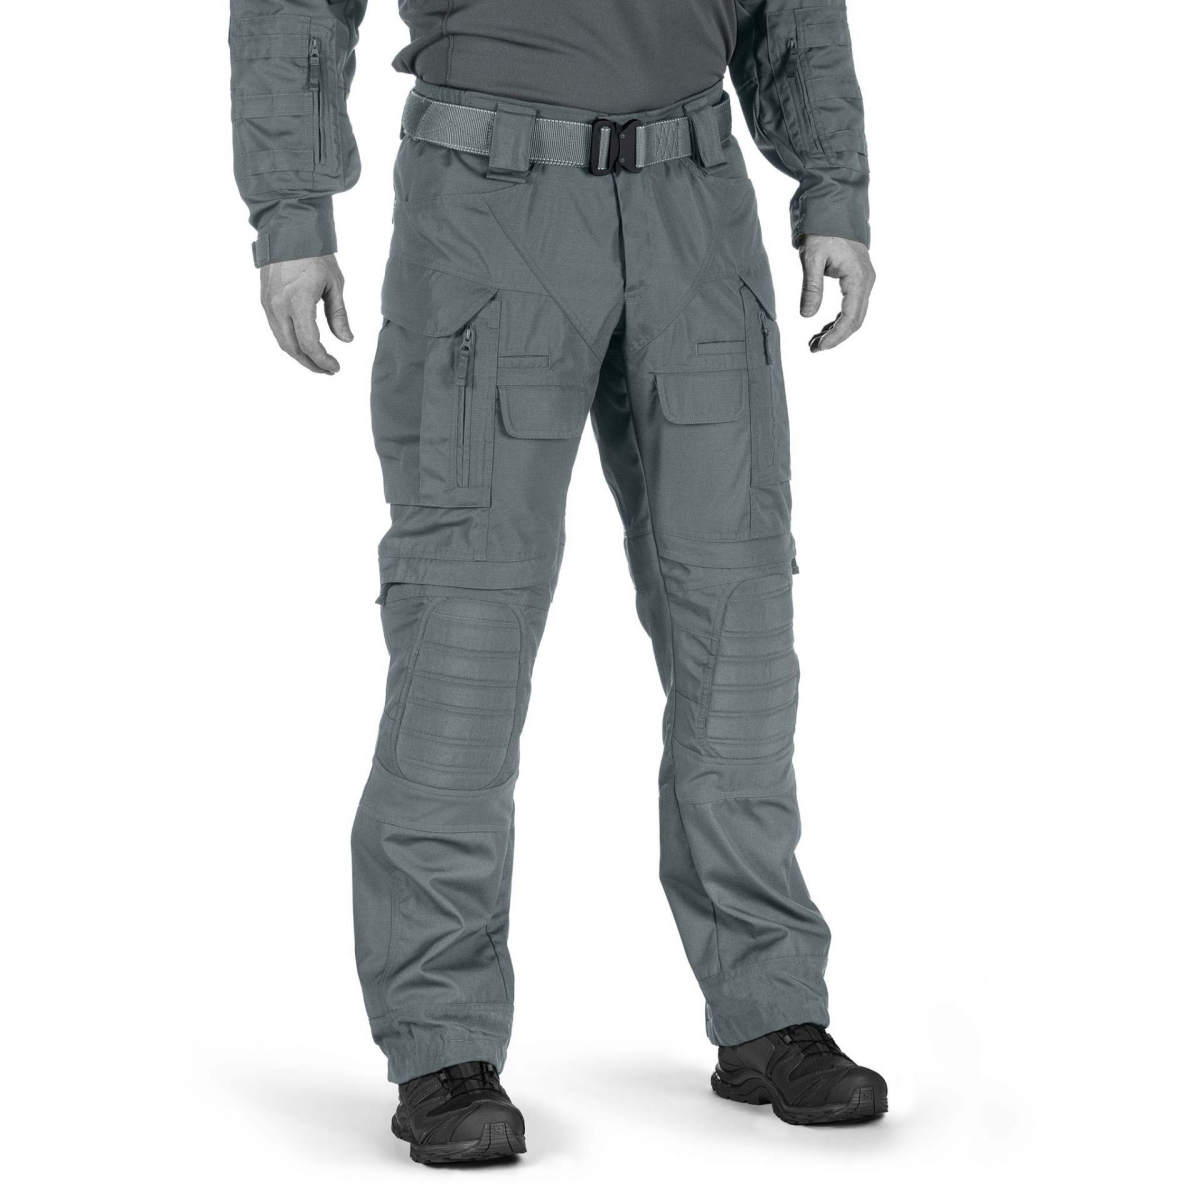 Striker X Combat Pants Steel Grey